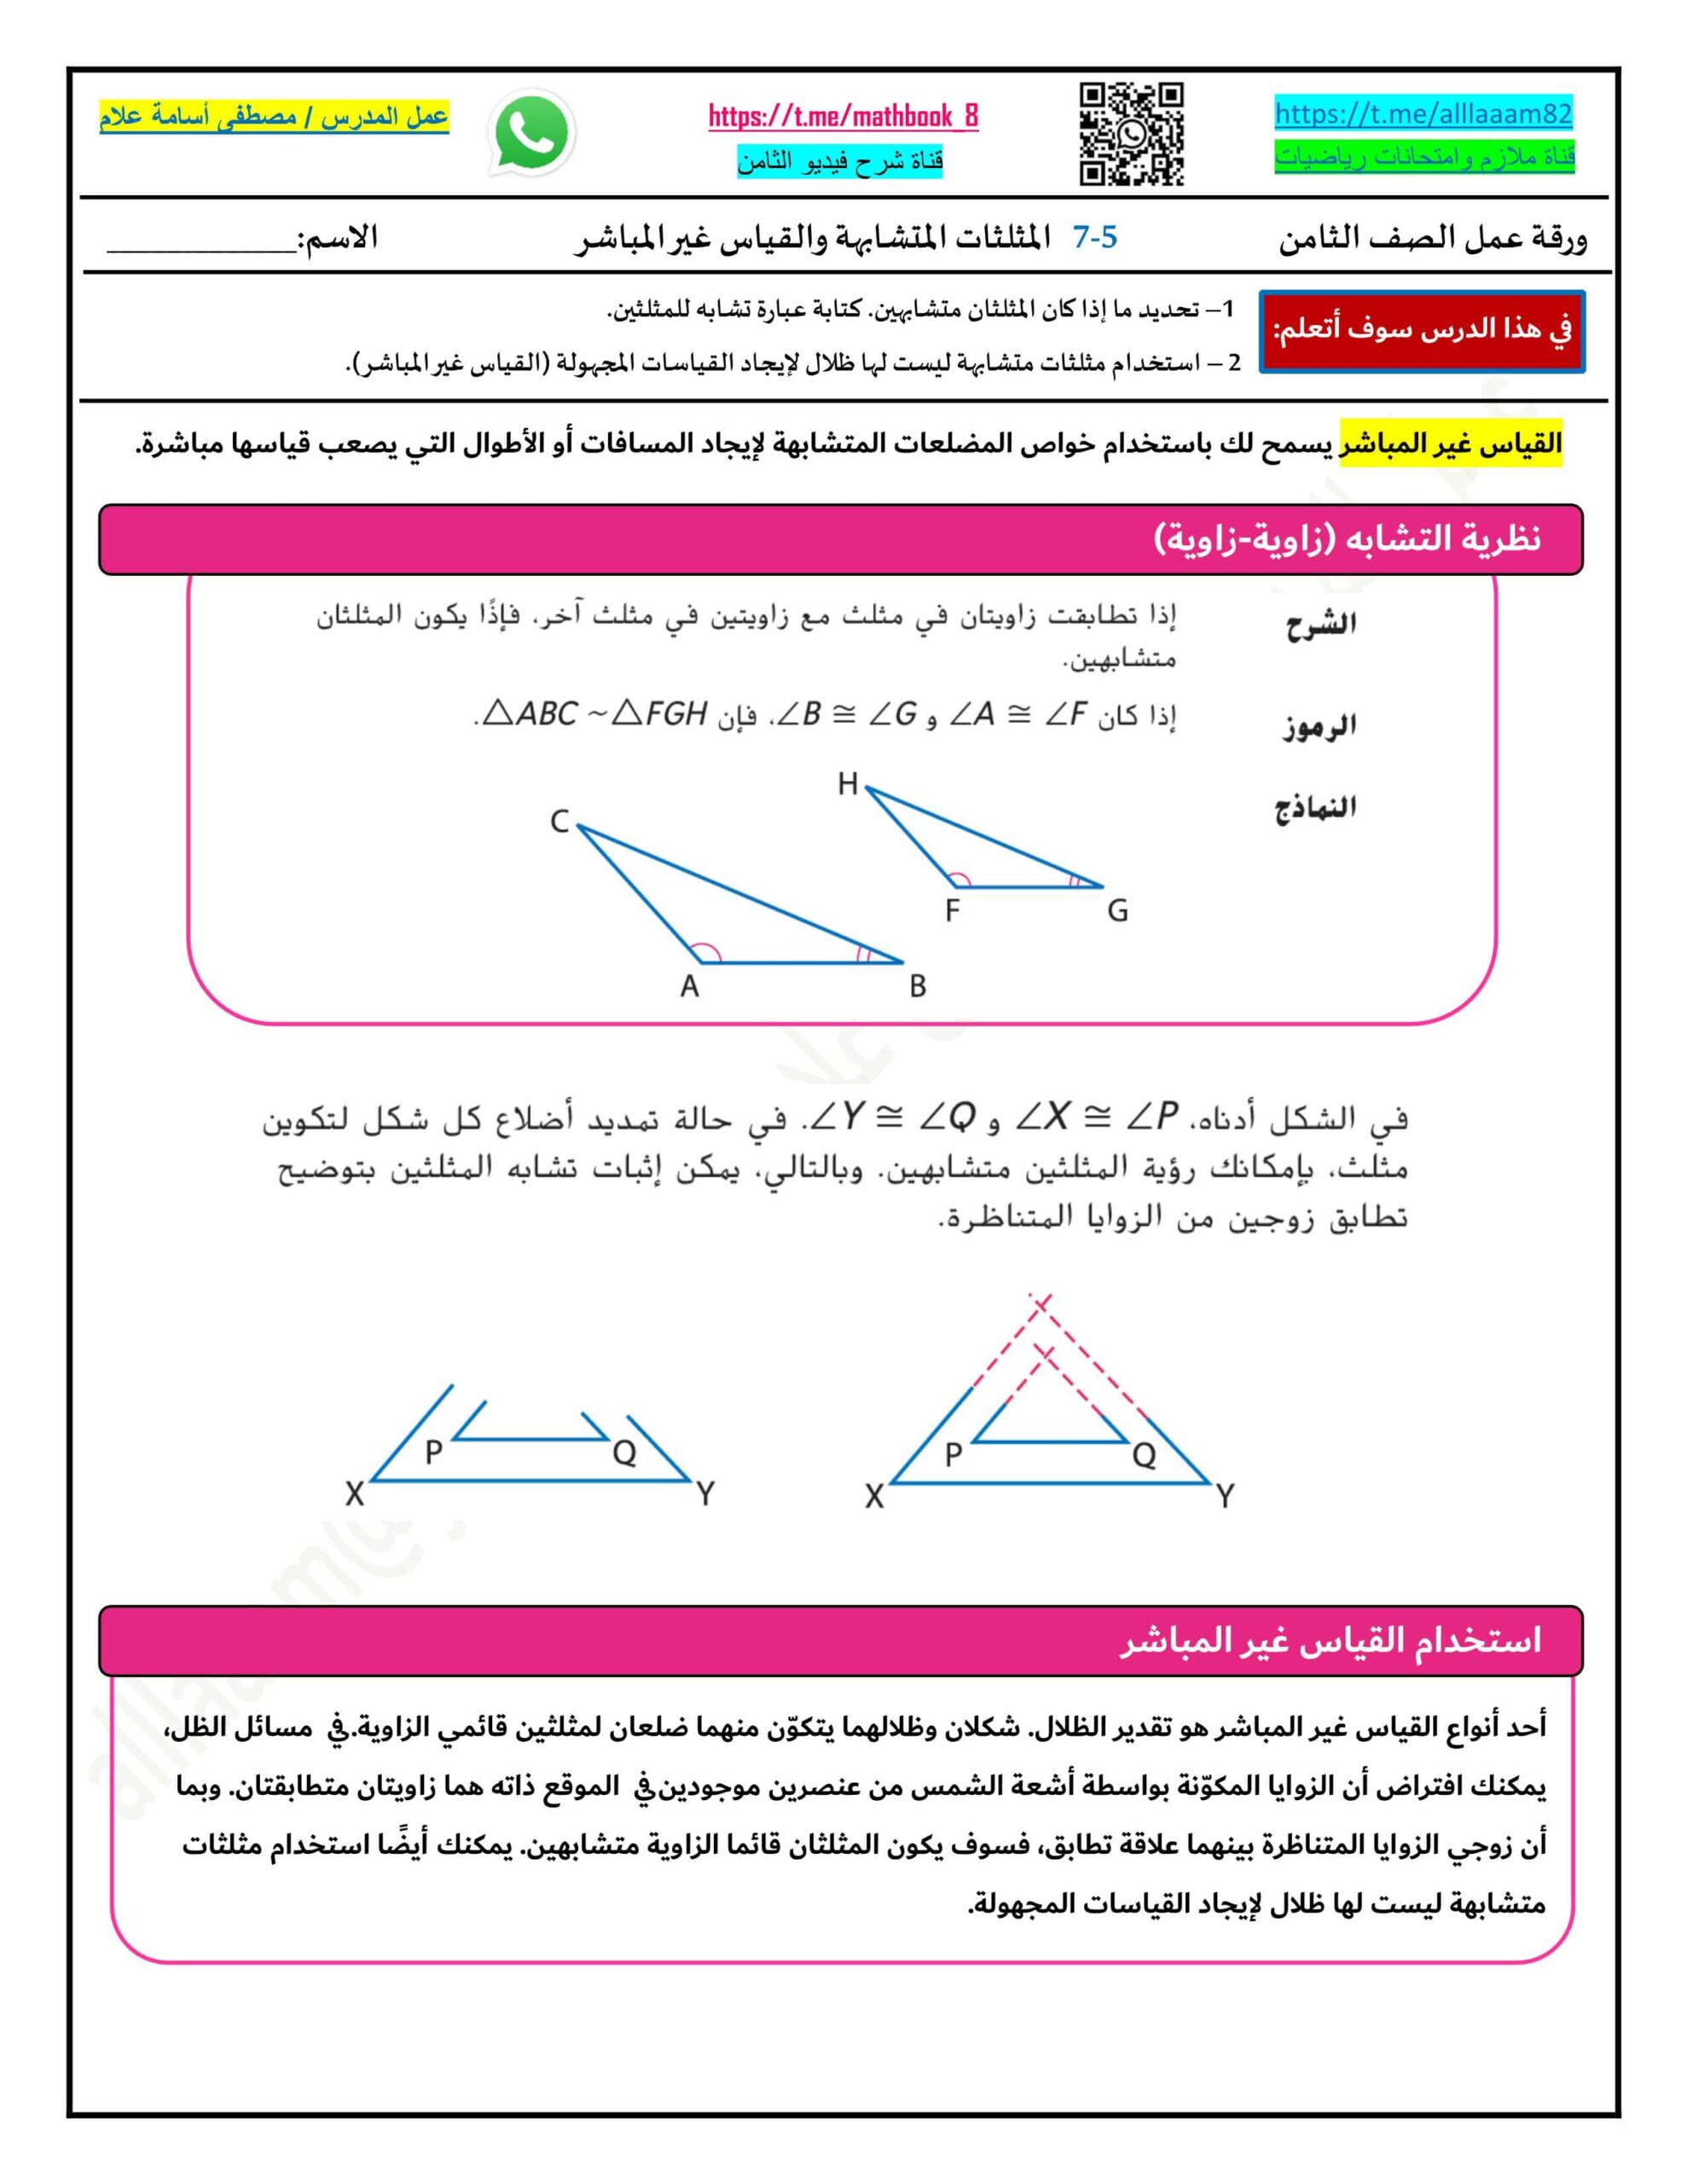 حل ورقة عمل المثلثات المتشابهة والقياس غير المباشر المتكاملة الصف الثامن